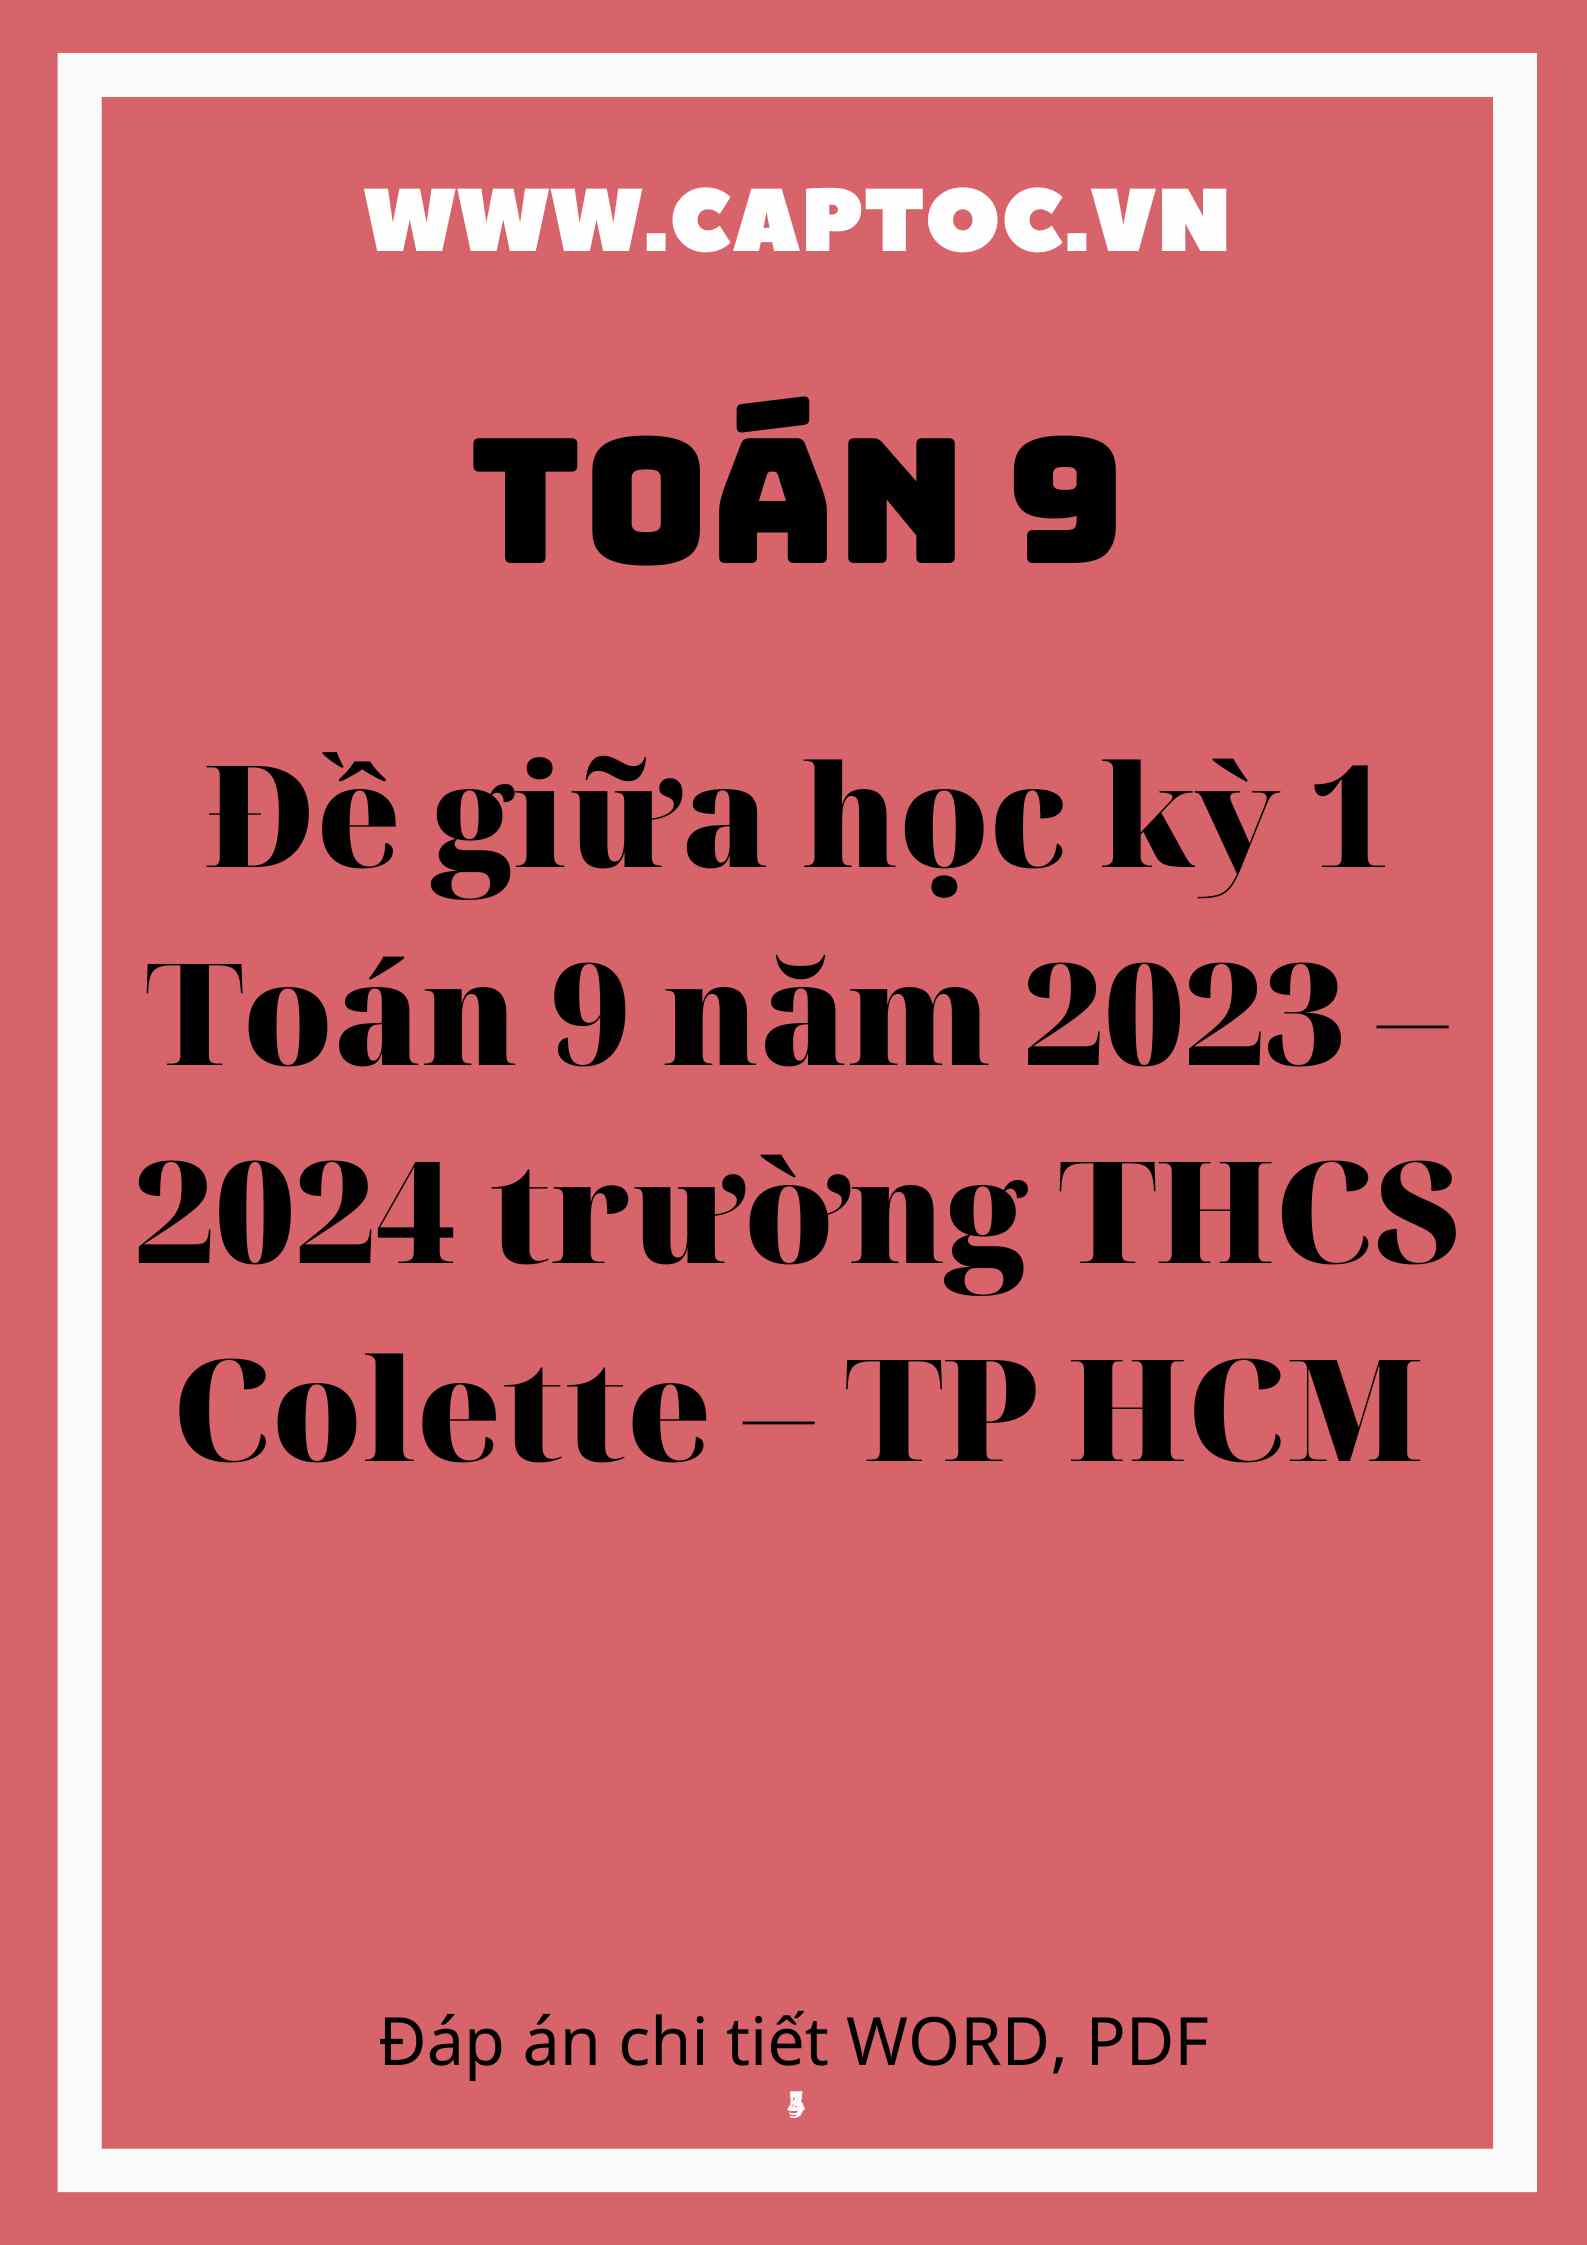 Đề giữa học kỳ 1 Toán 9 năm 2023 – 2024 trường THCS Colette – TP HCM